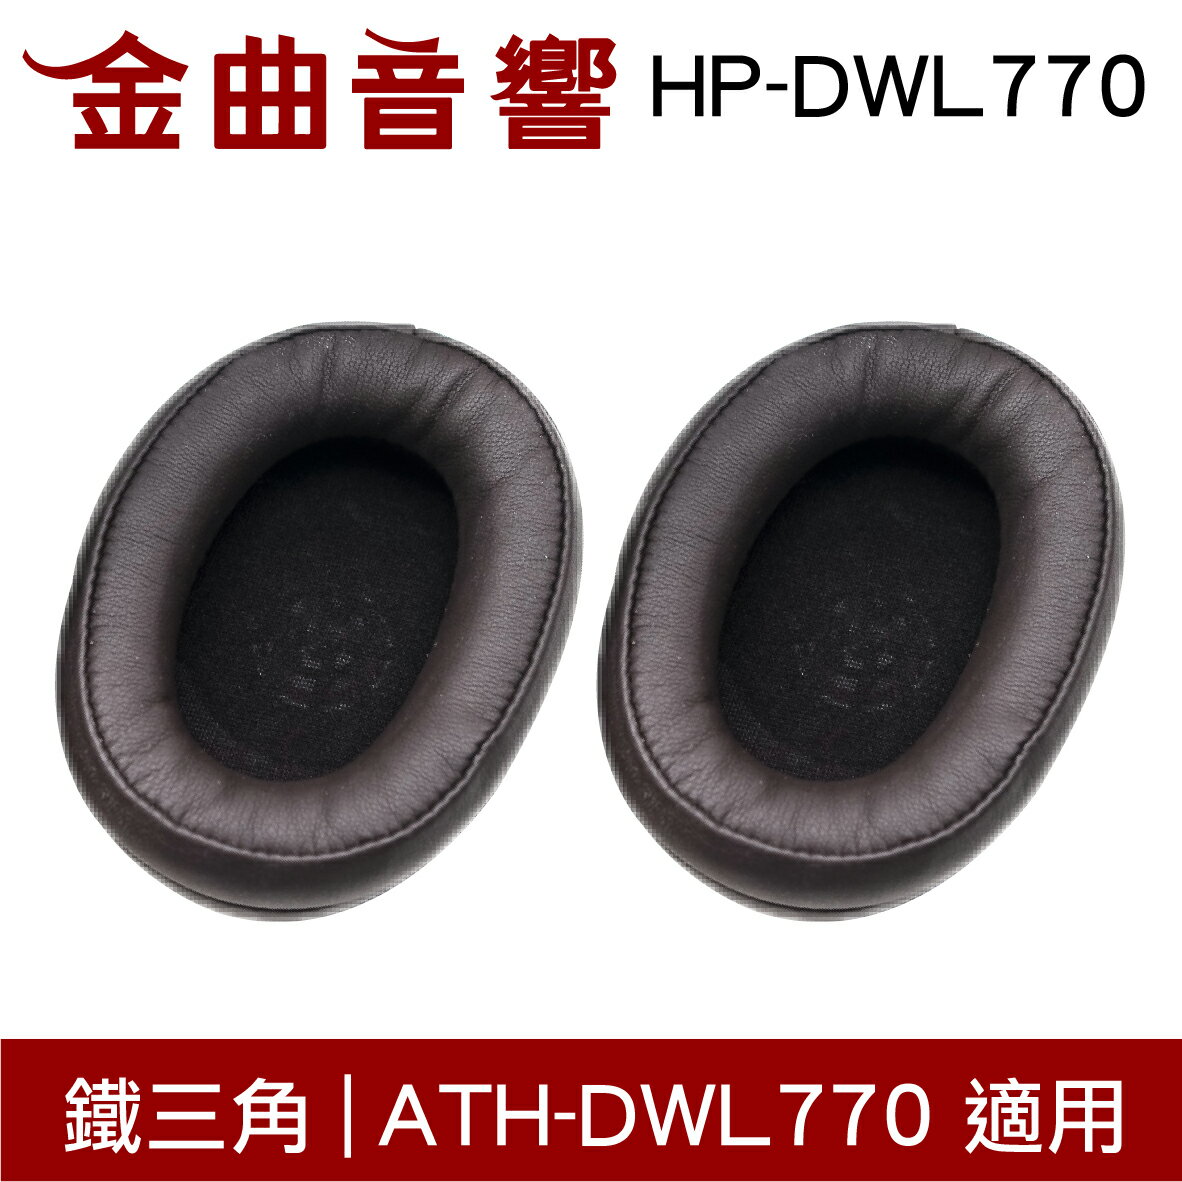 鐵三角 HP-DWL770 替換耳罩 一對 ATH-DWL770 適用 | 金曲音響